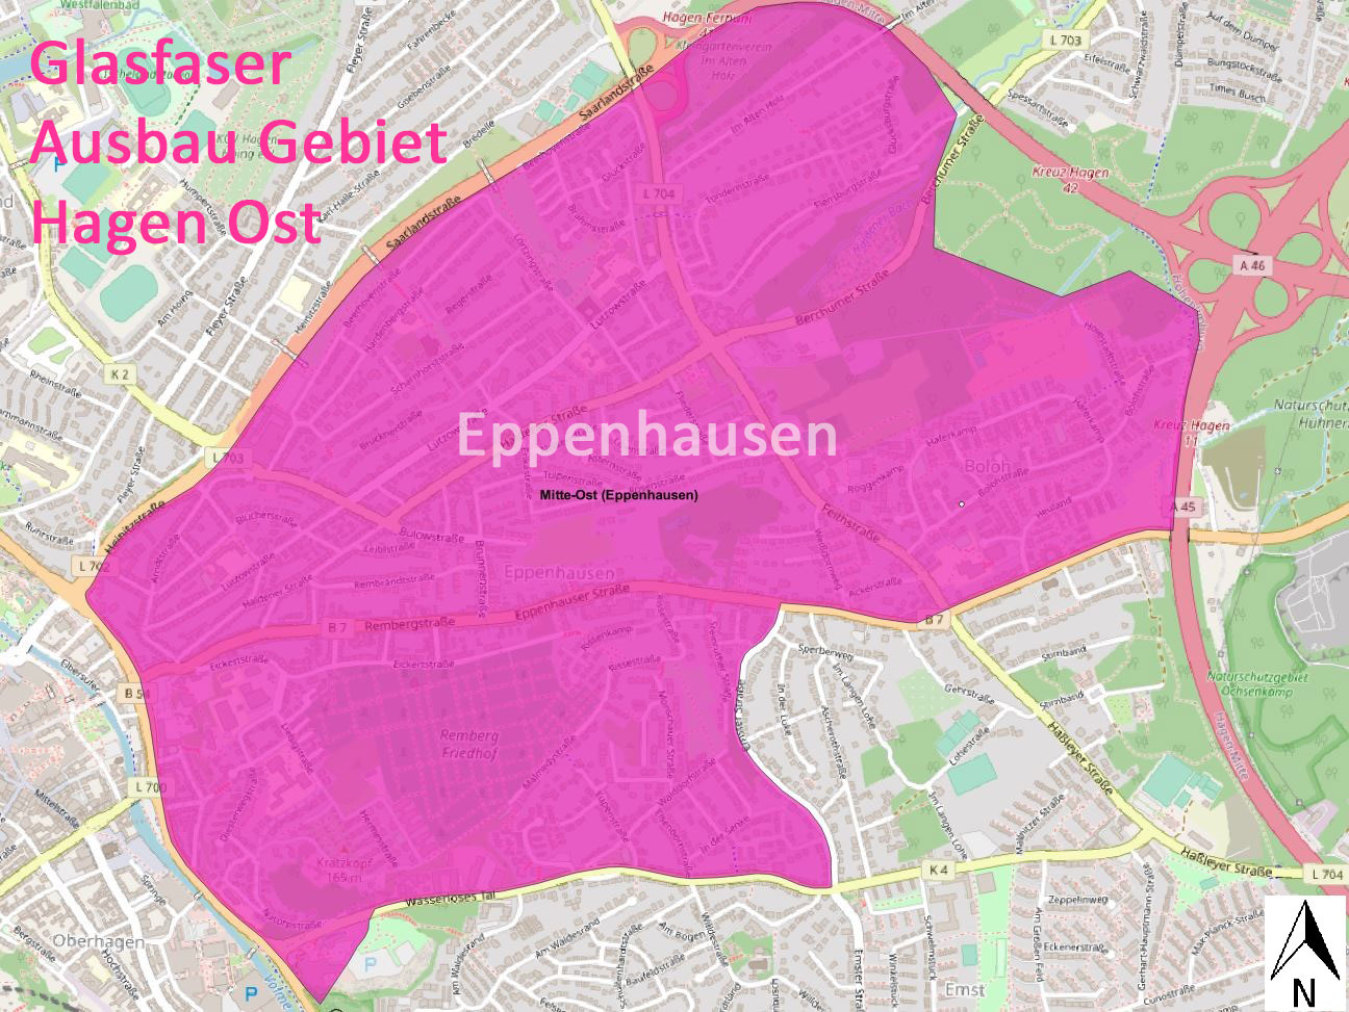 Karte Telekom Glasfaser-Knoten-Ausbau-Gebiet Hagen Ost - Eppenhausen